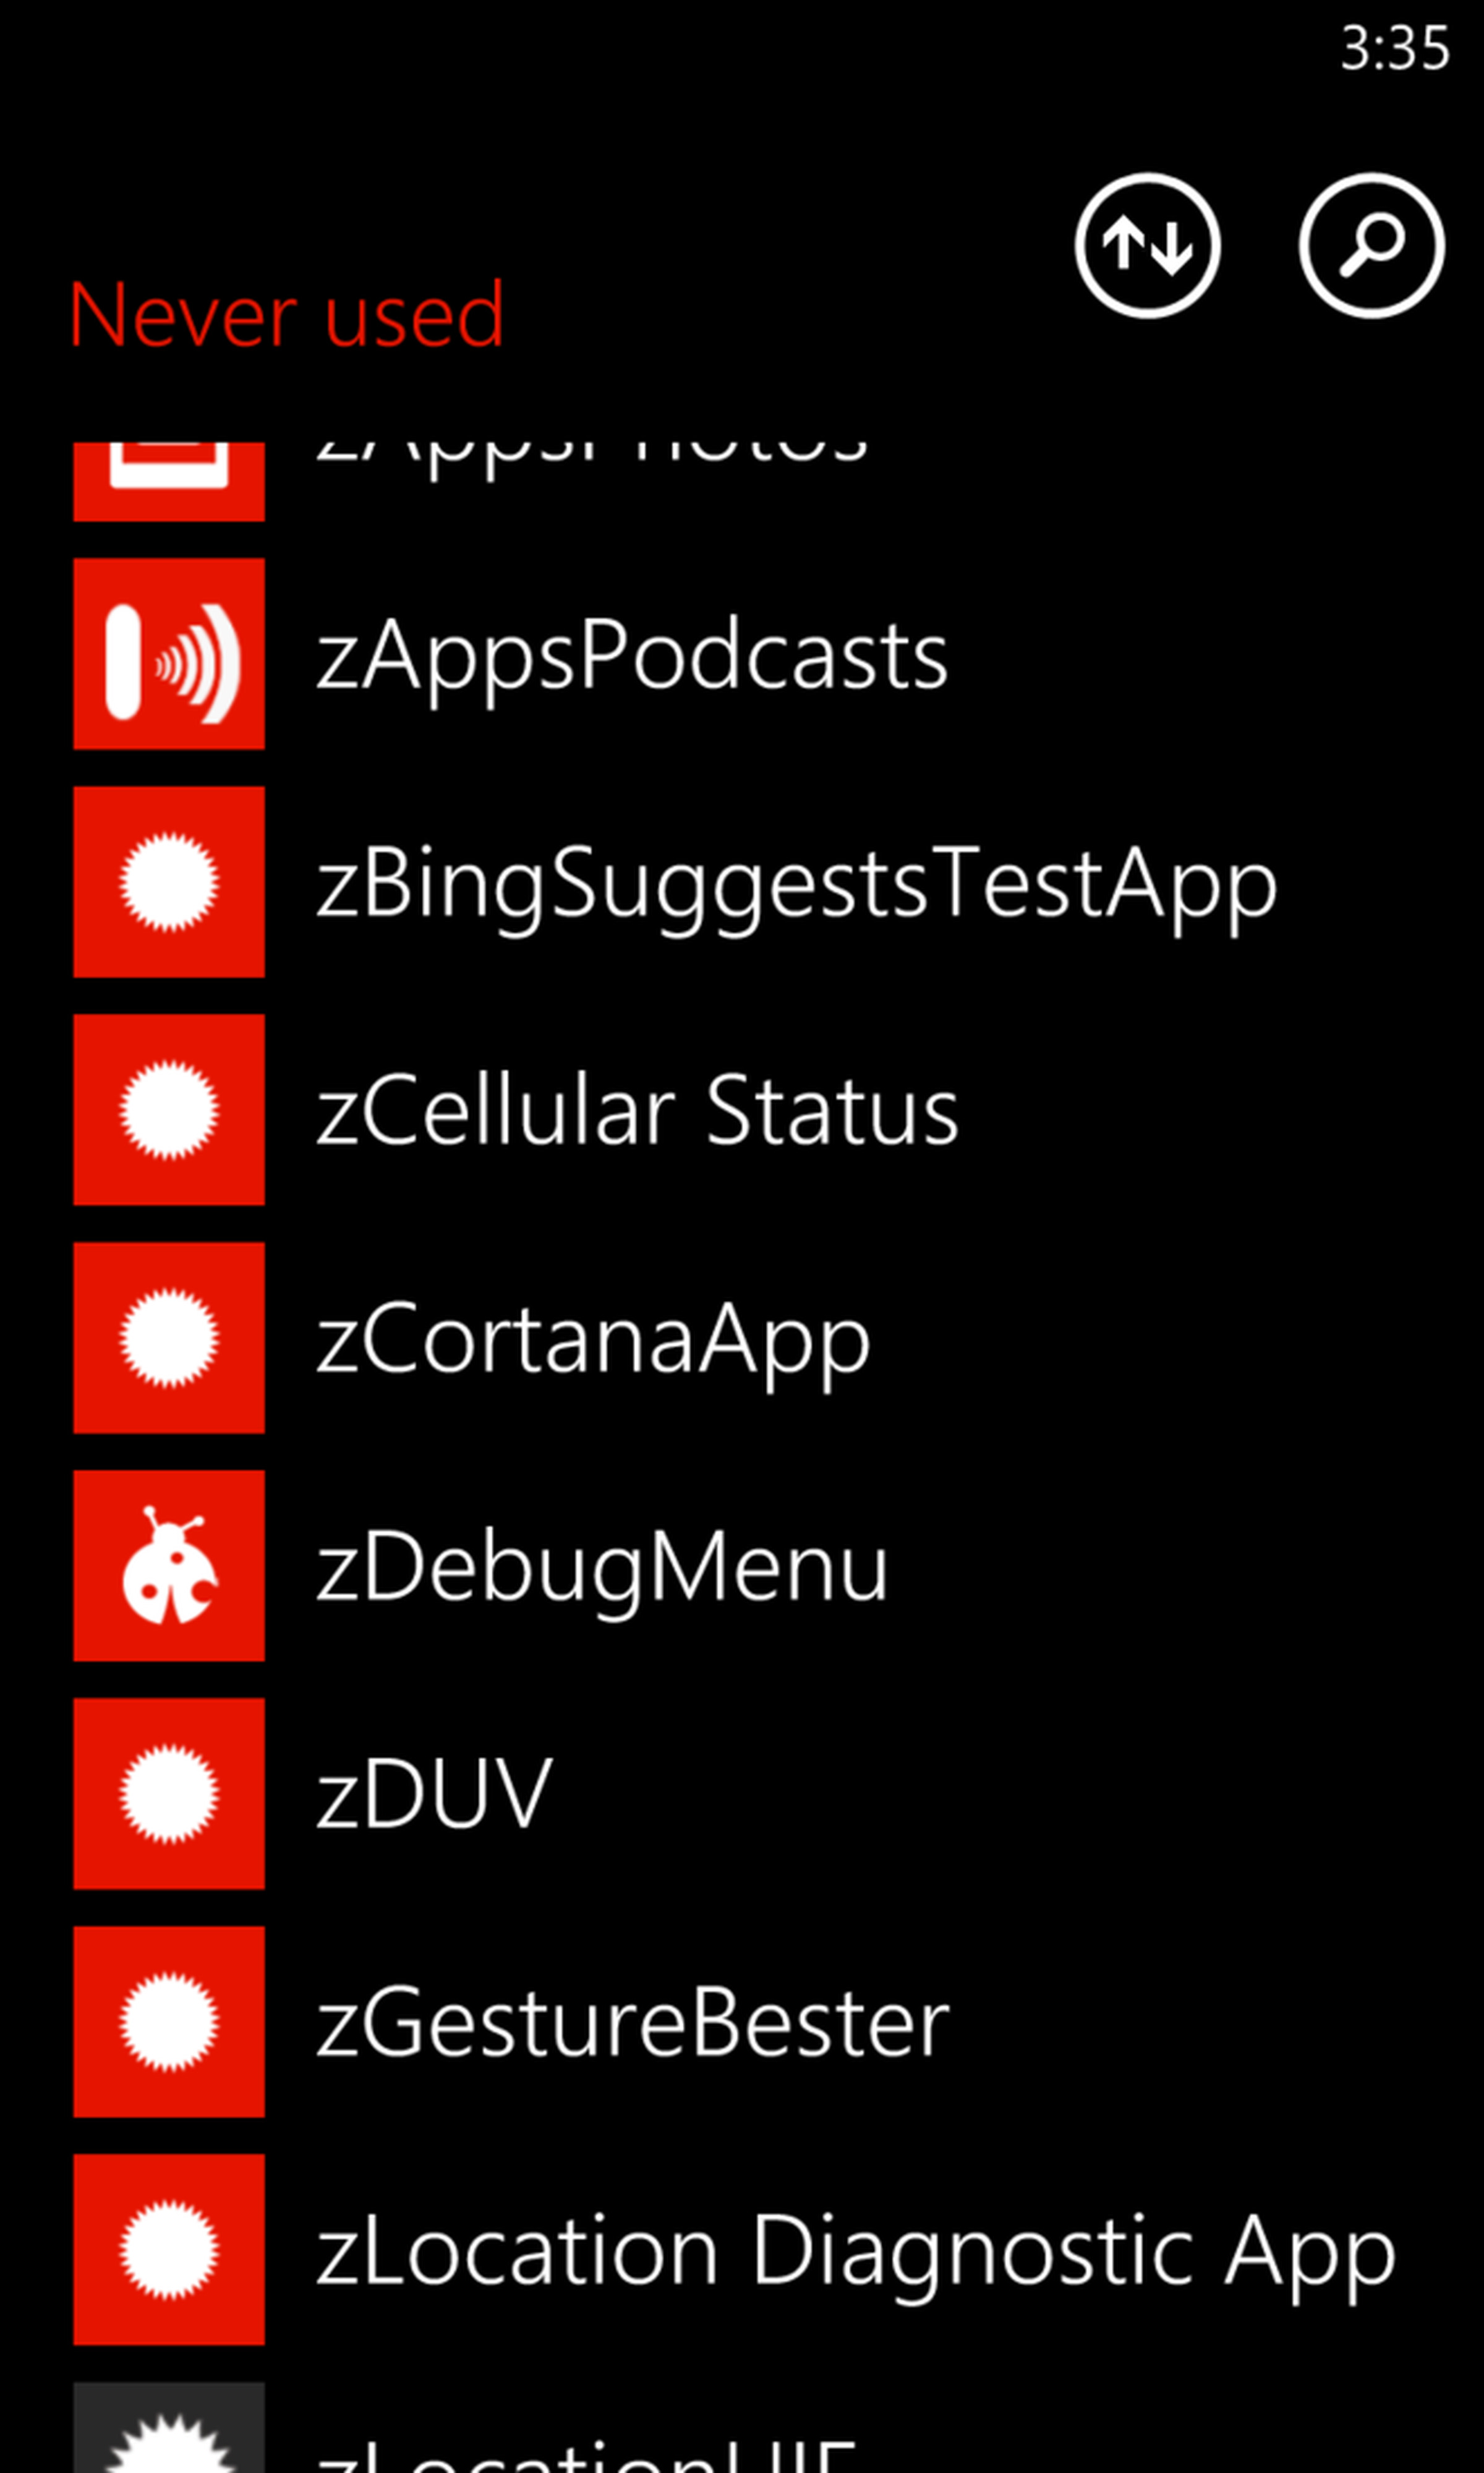 Windows Phone leaked screenshots